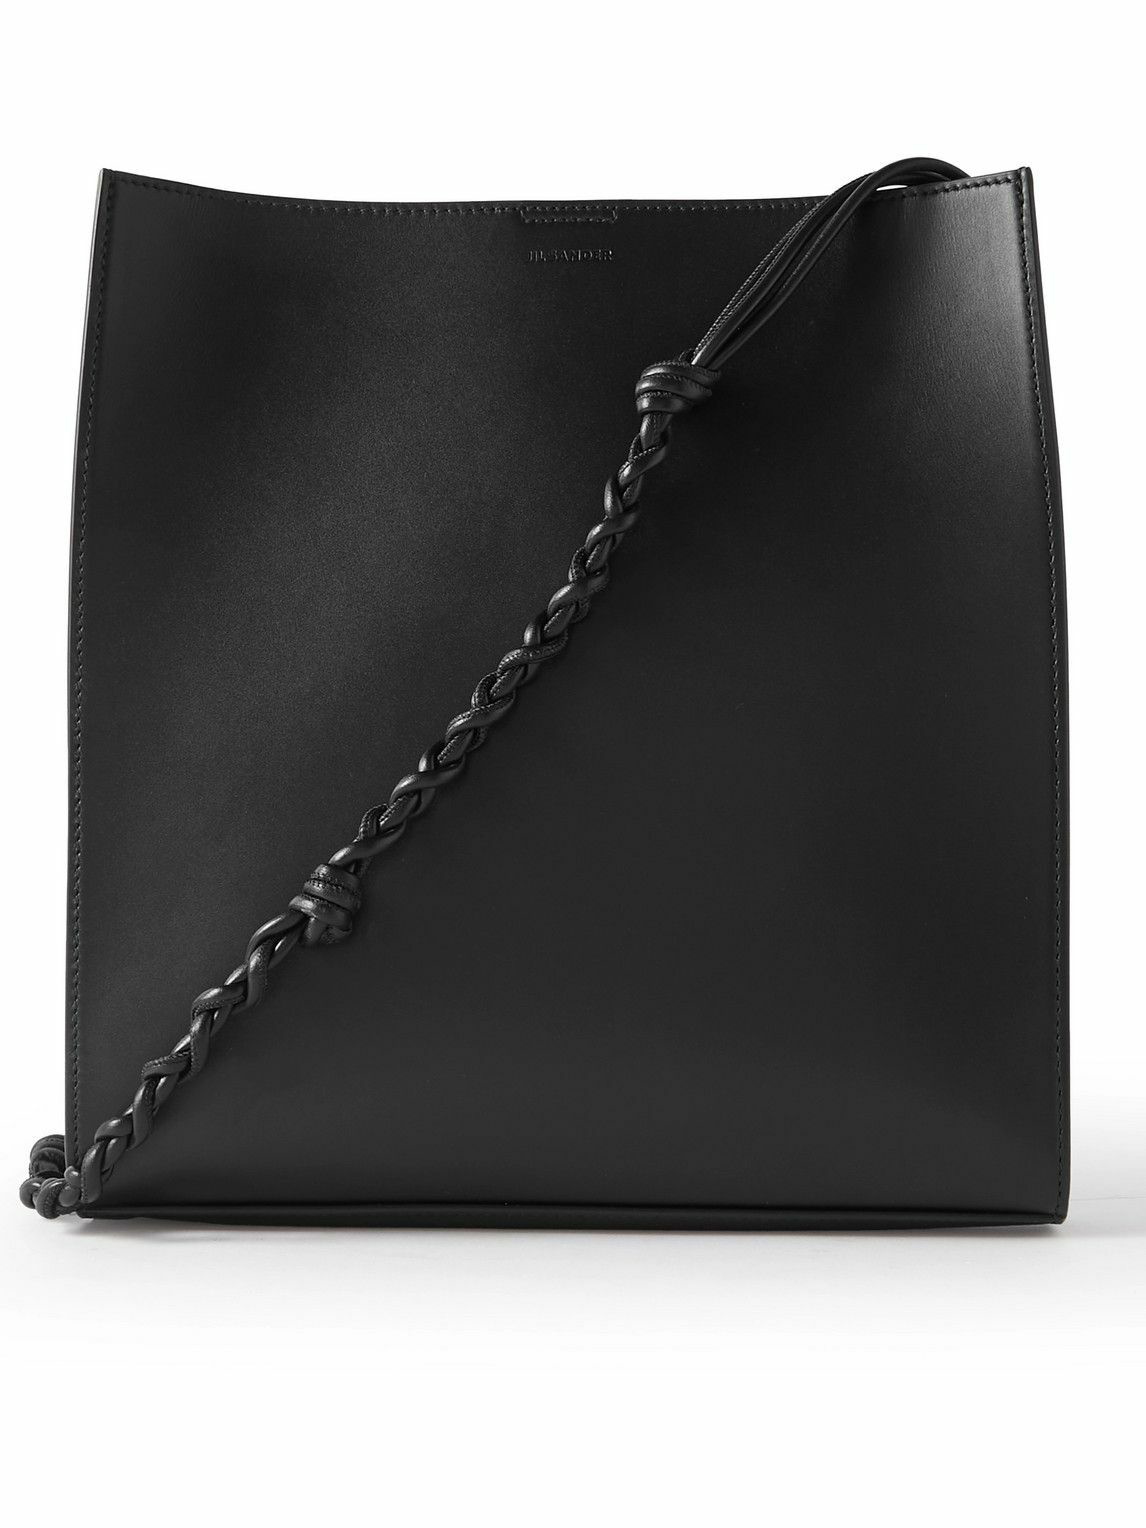 Jil Sander - Tangle Medium Leather Messenger Bag Jil Sander